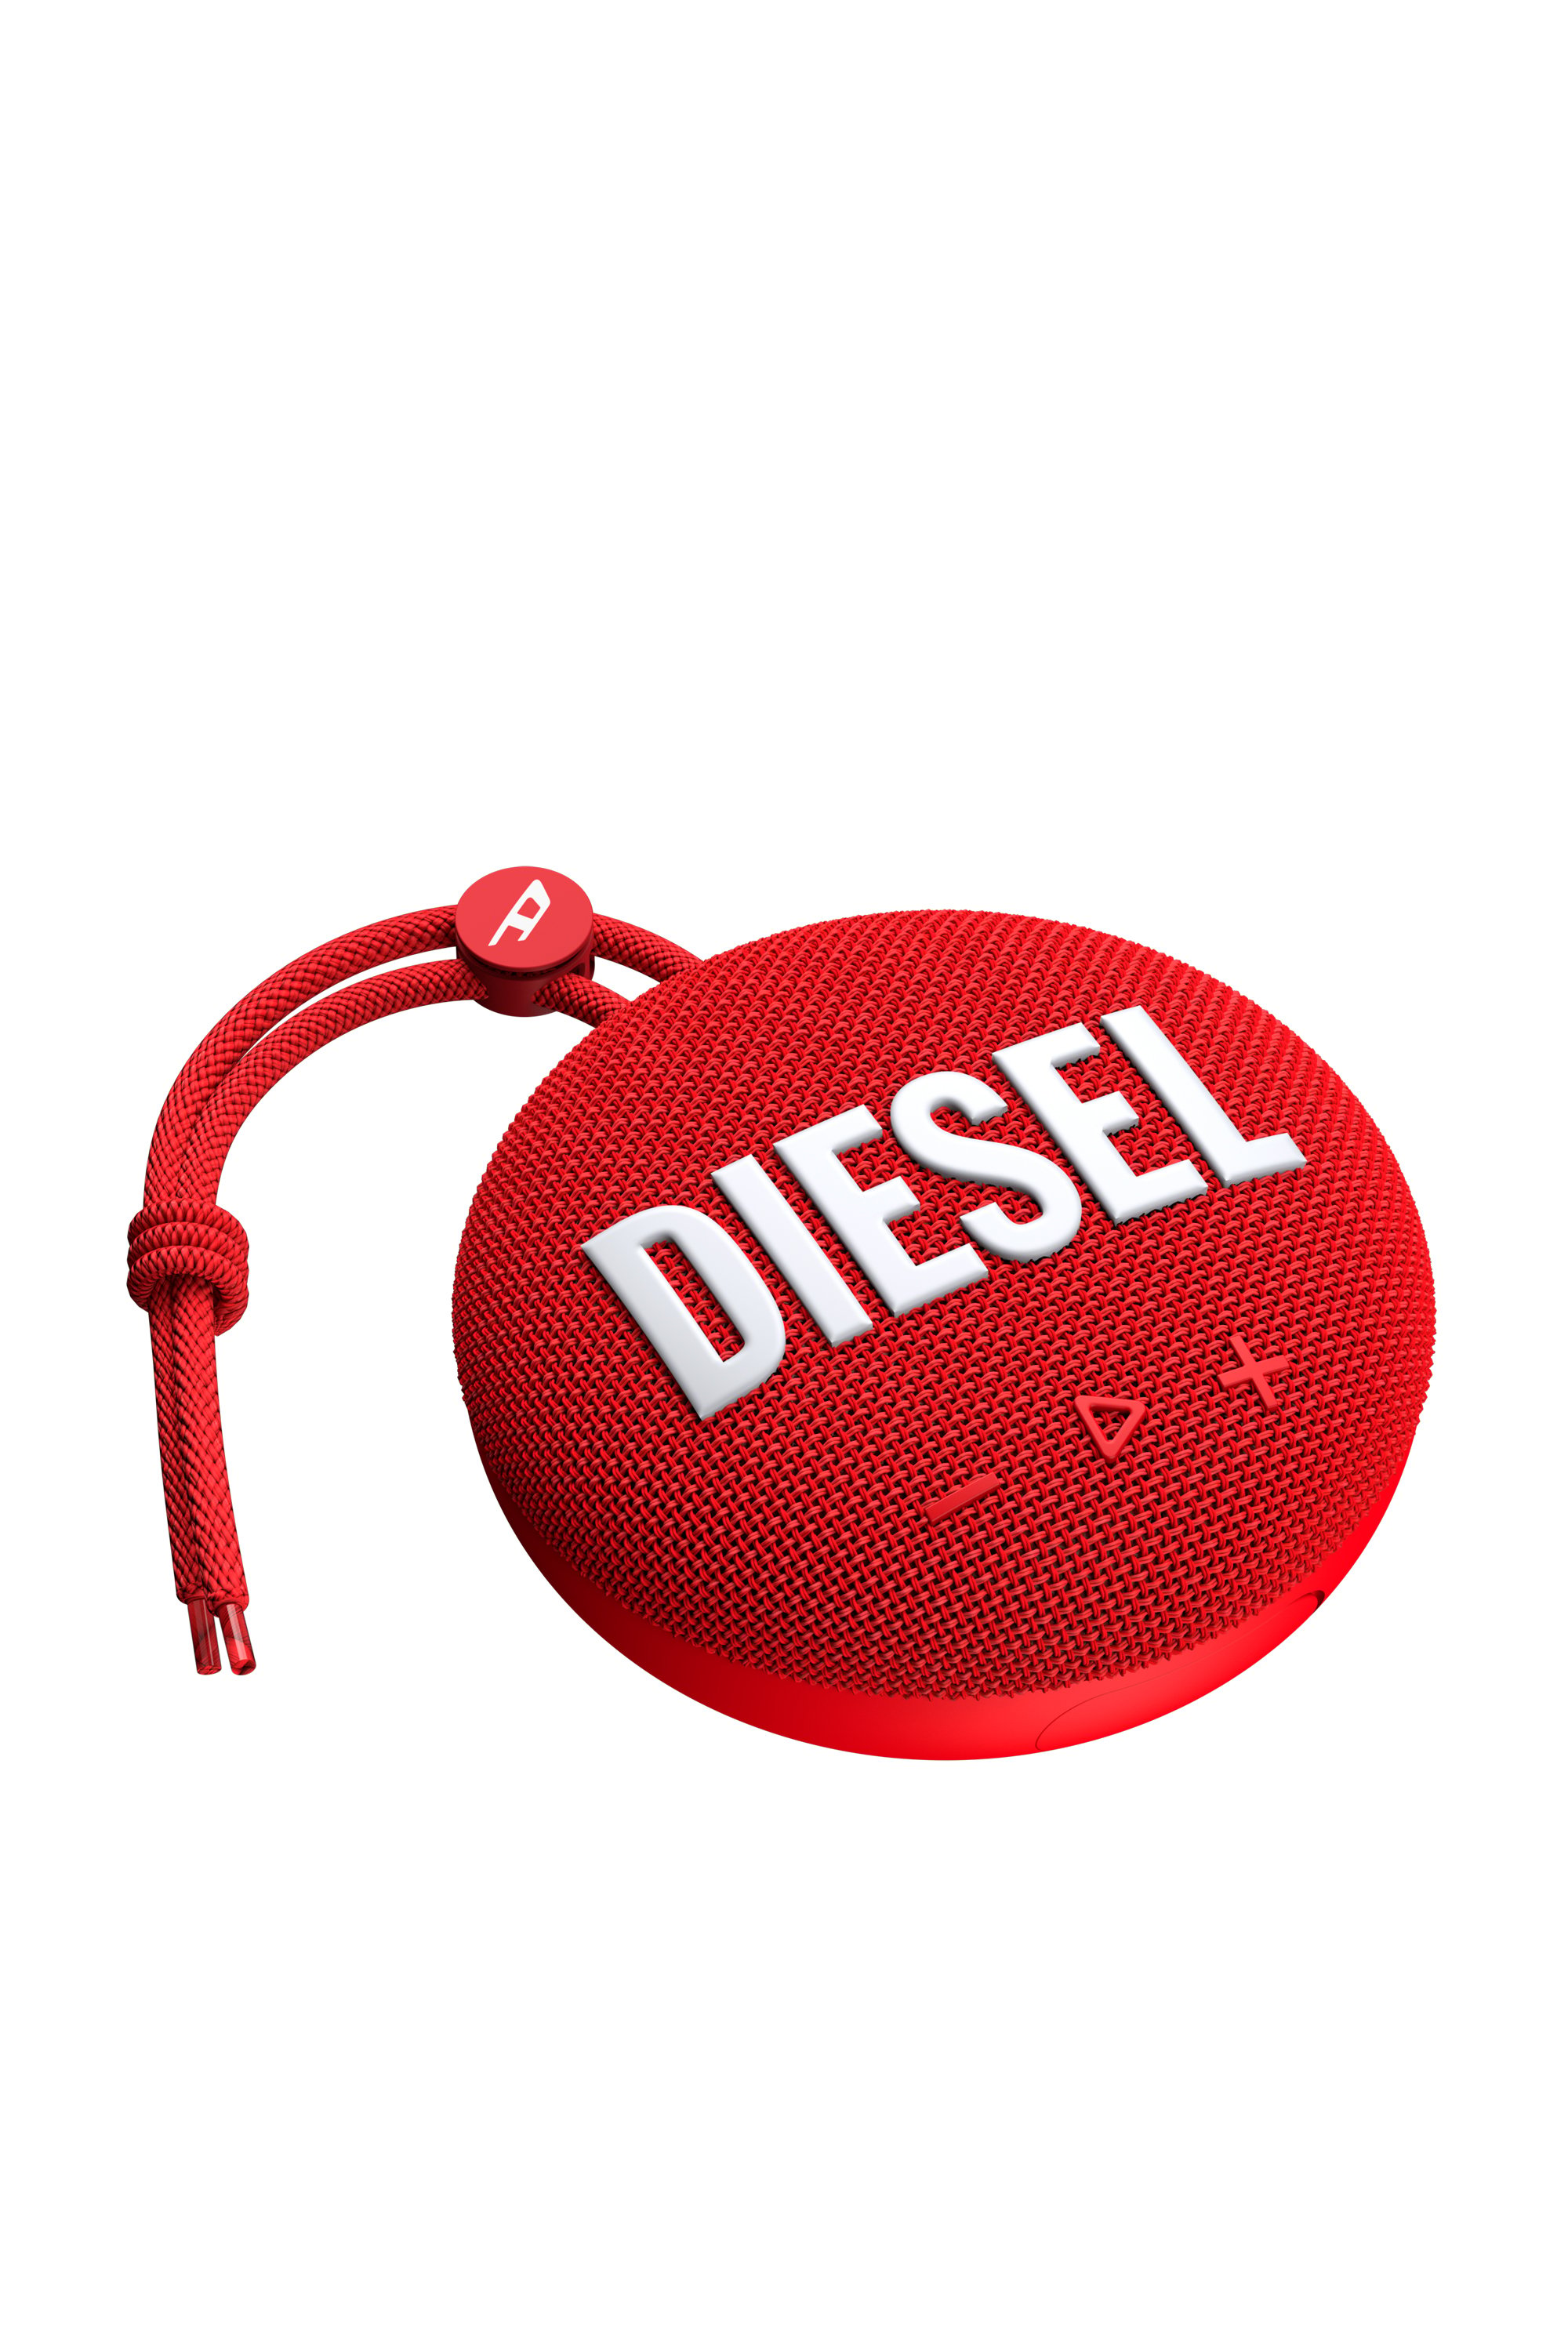 Diesel - 52954 BLUETOOTH SPEAKER, Red - Image 2